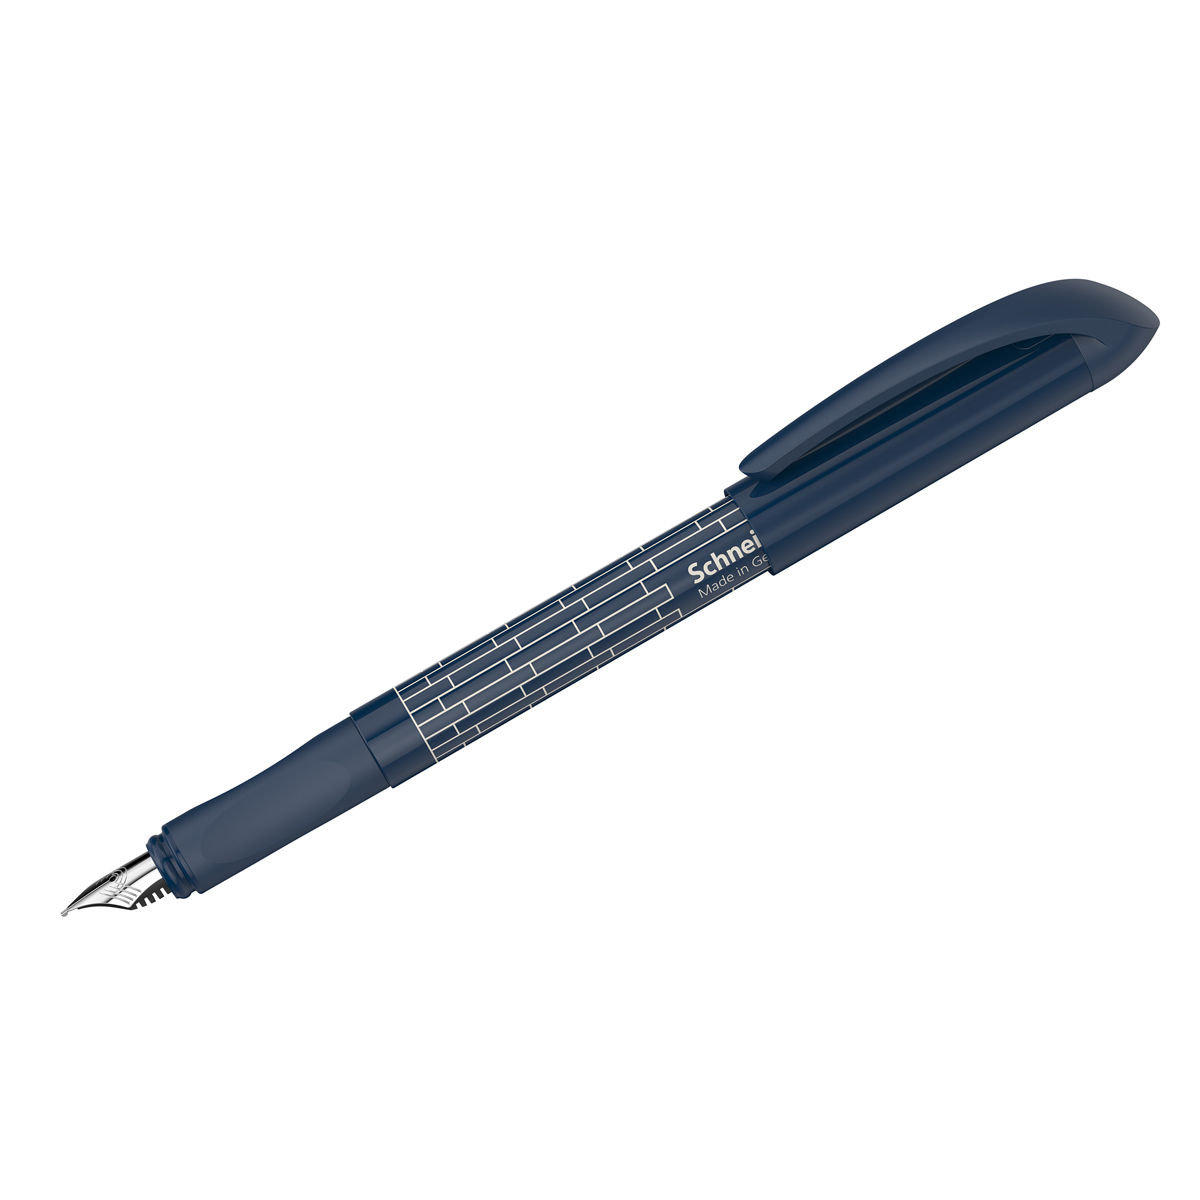 Ручка перьевая Schneider Easy navy синяя, 1 картридж, грип, темно-синий корпус, 2шт.